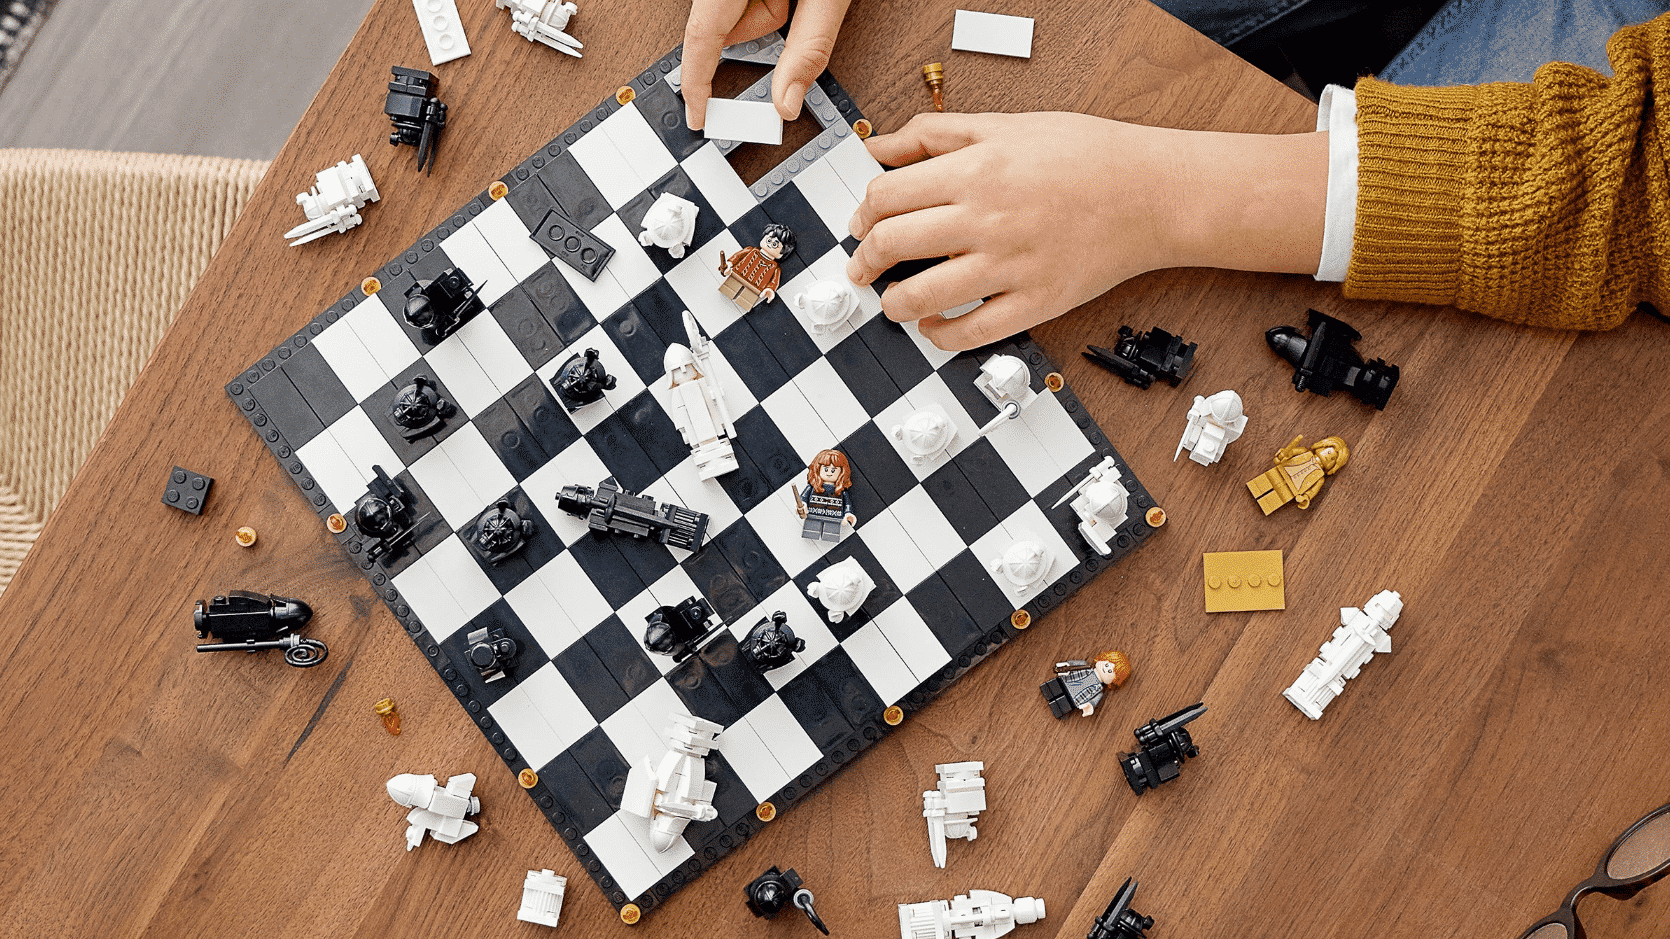 Construye y juega tu propio juego de ajedrez magico LEGO